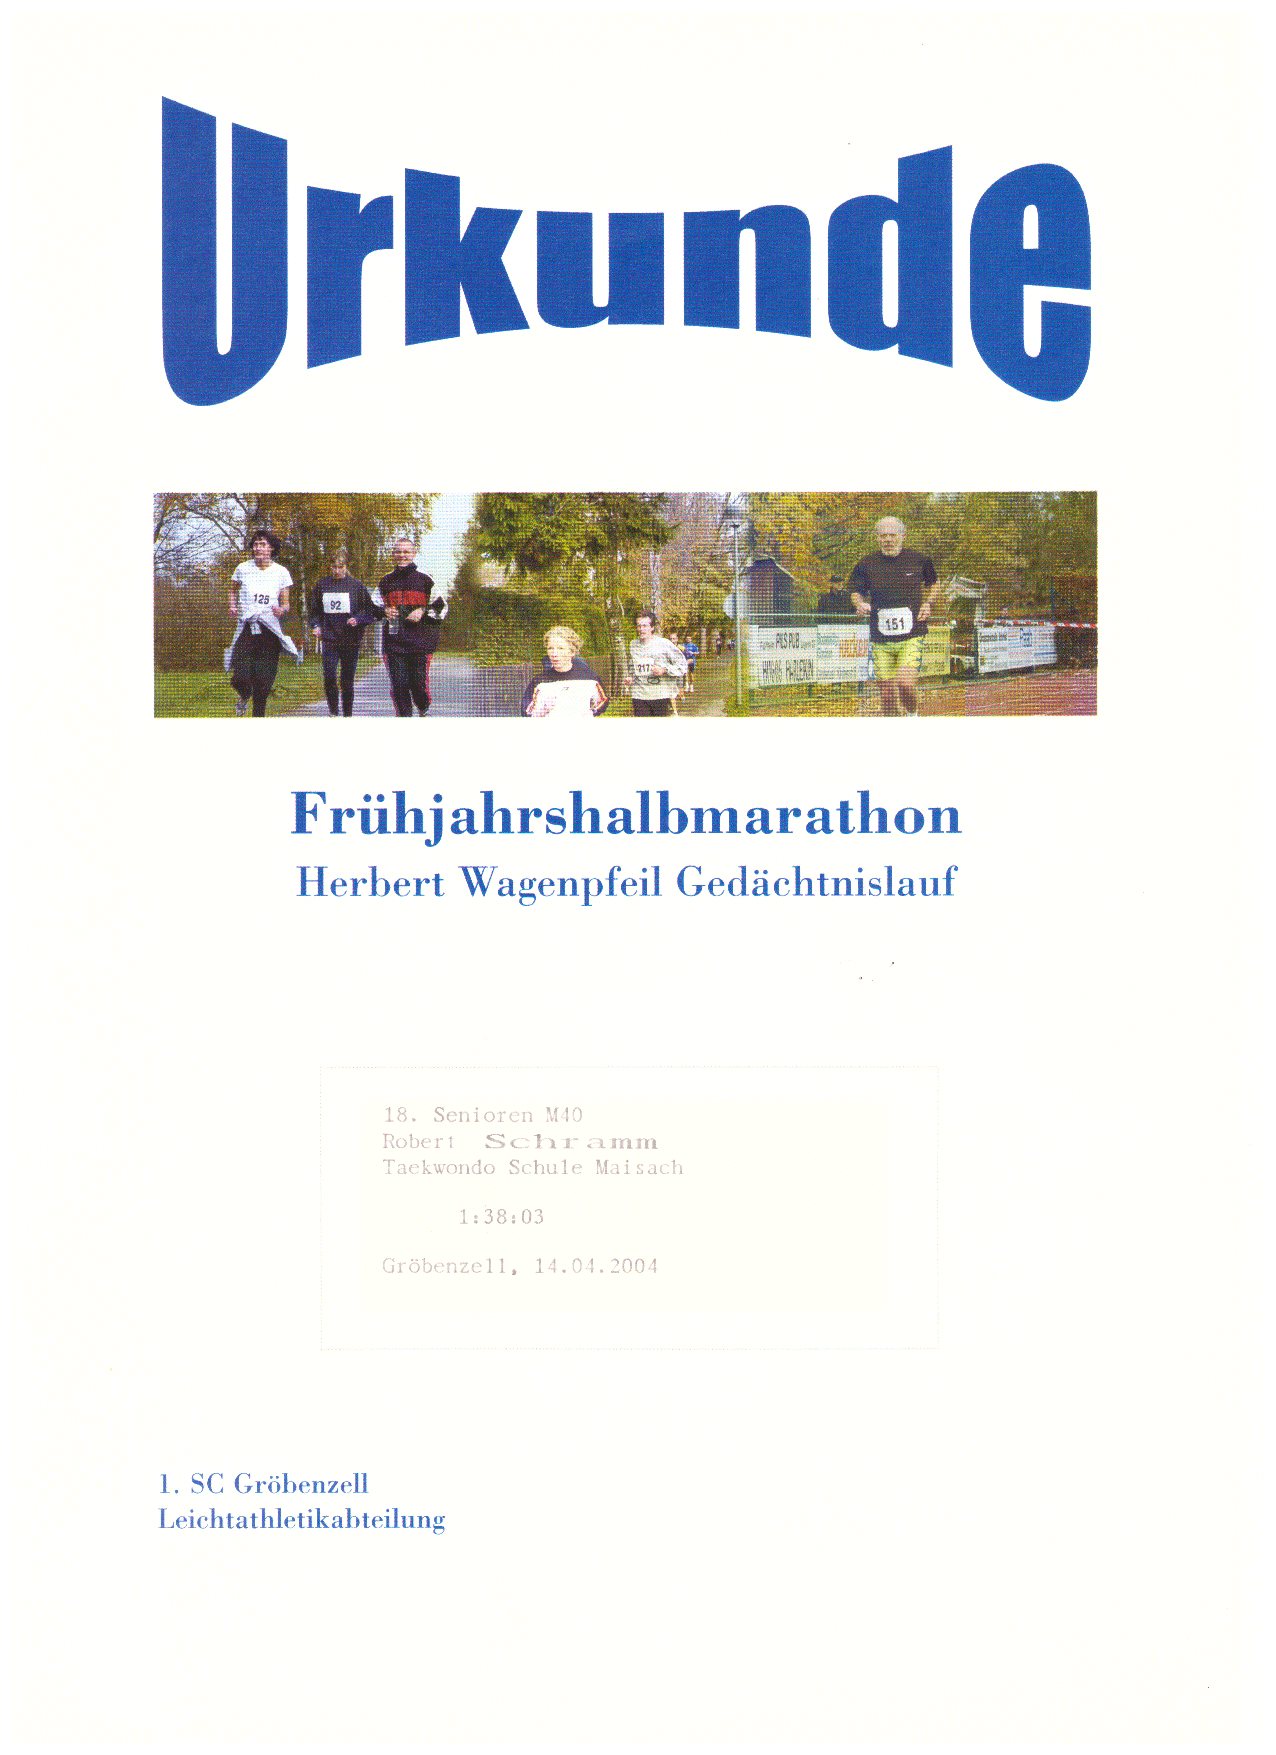 Urkunde-Grbenzell-2004